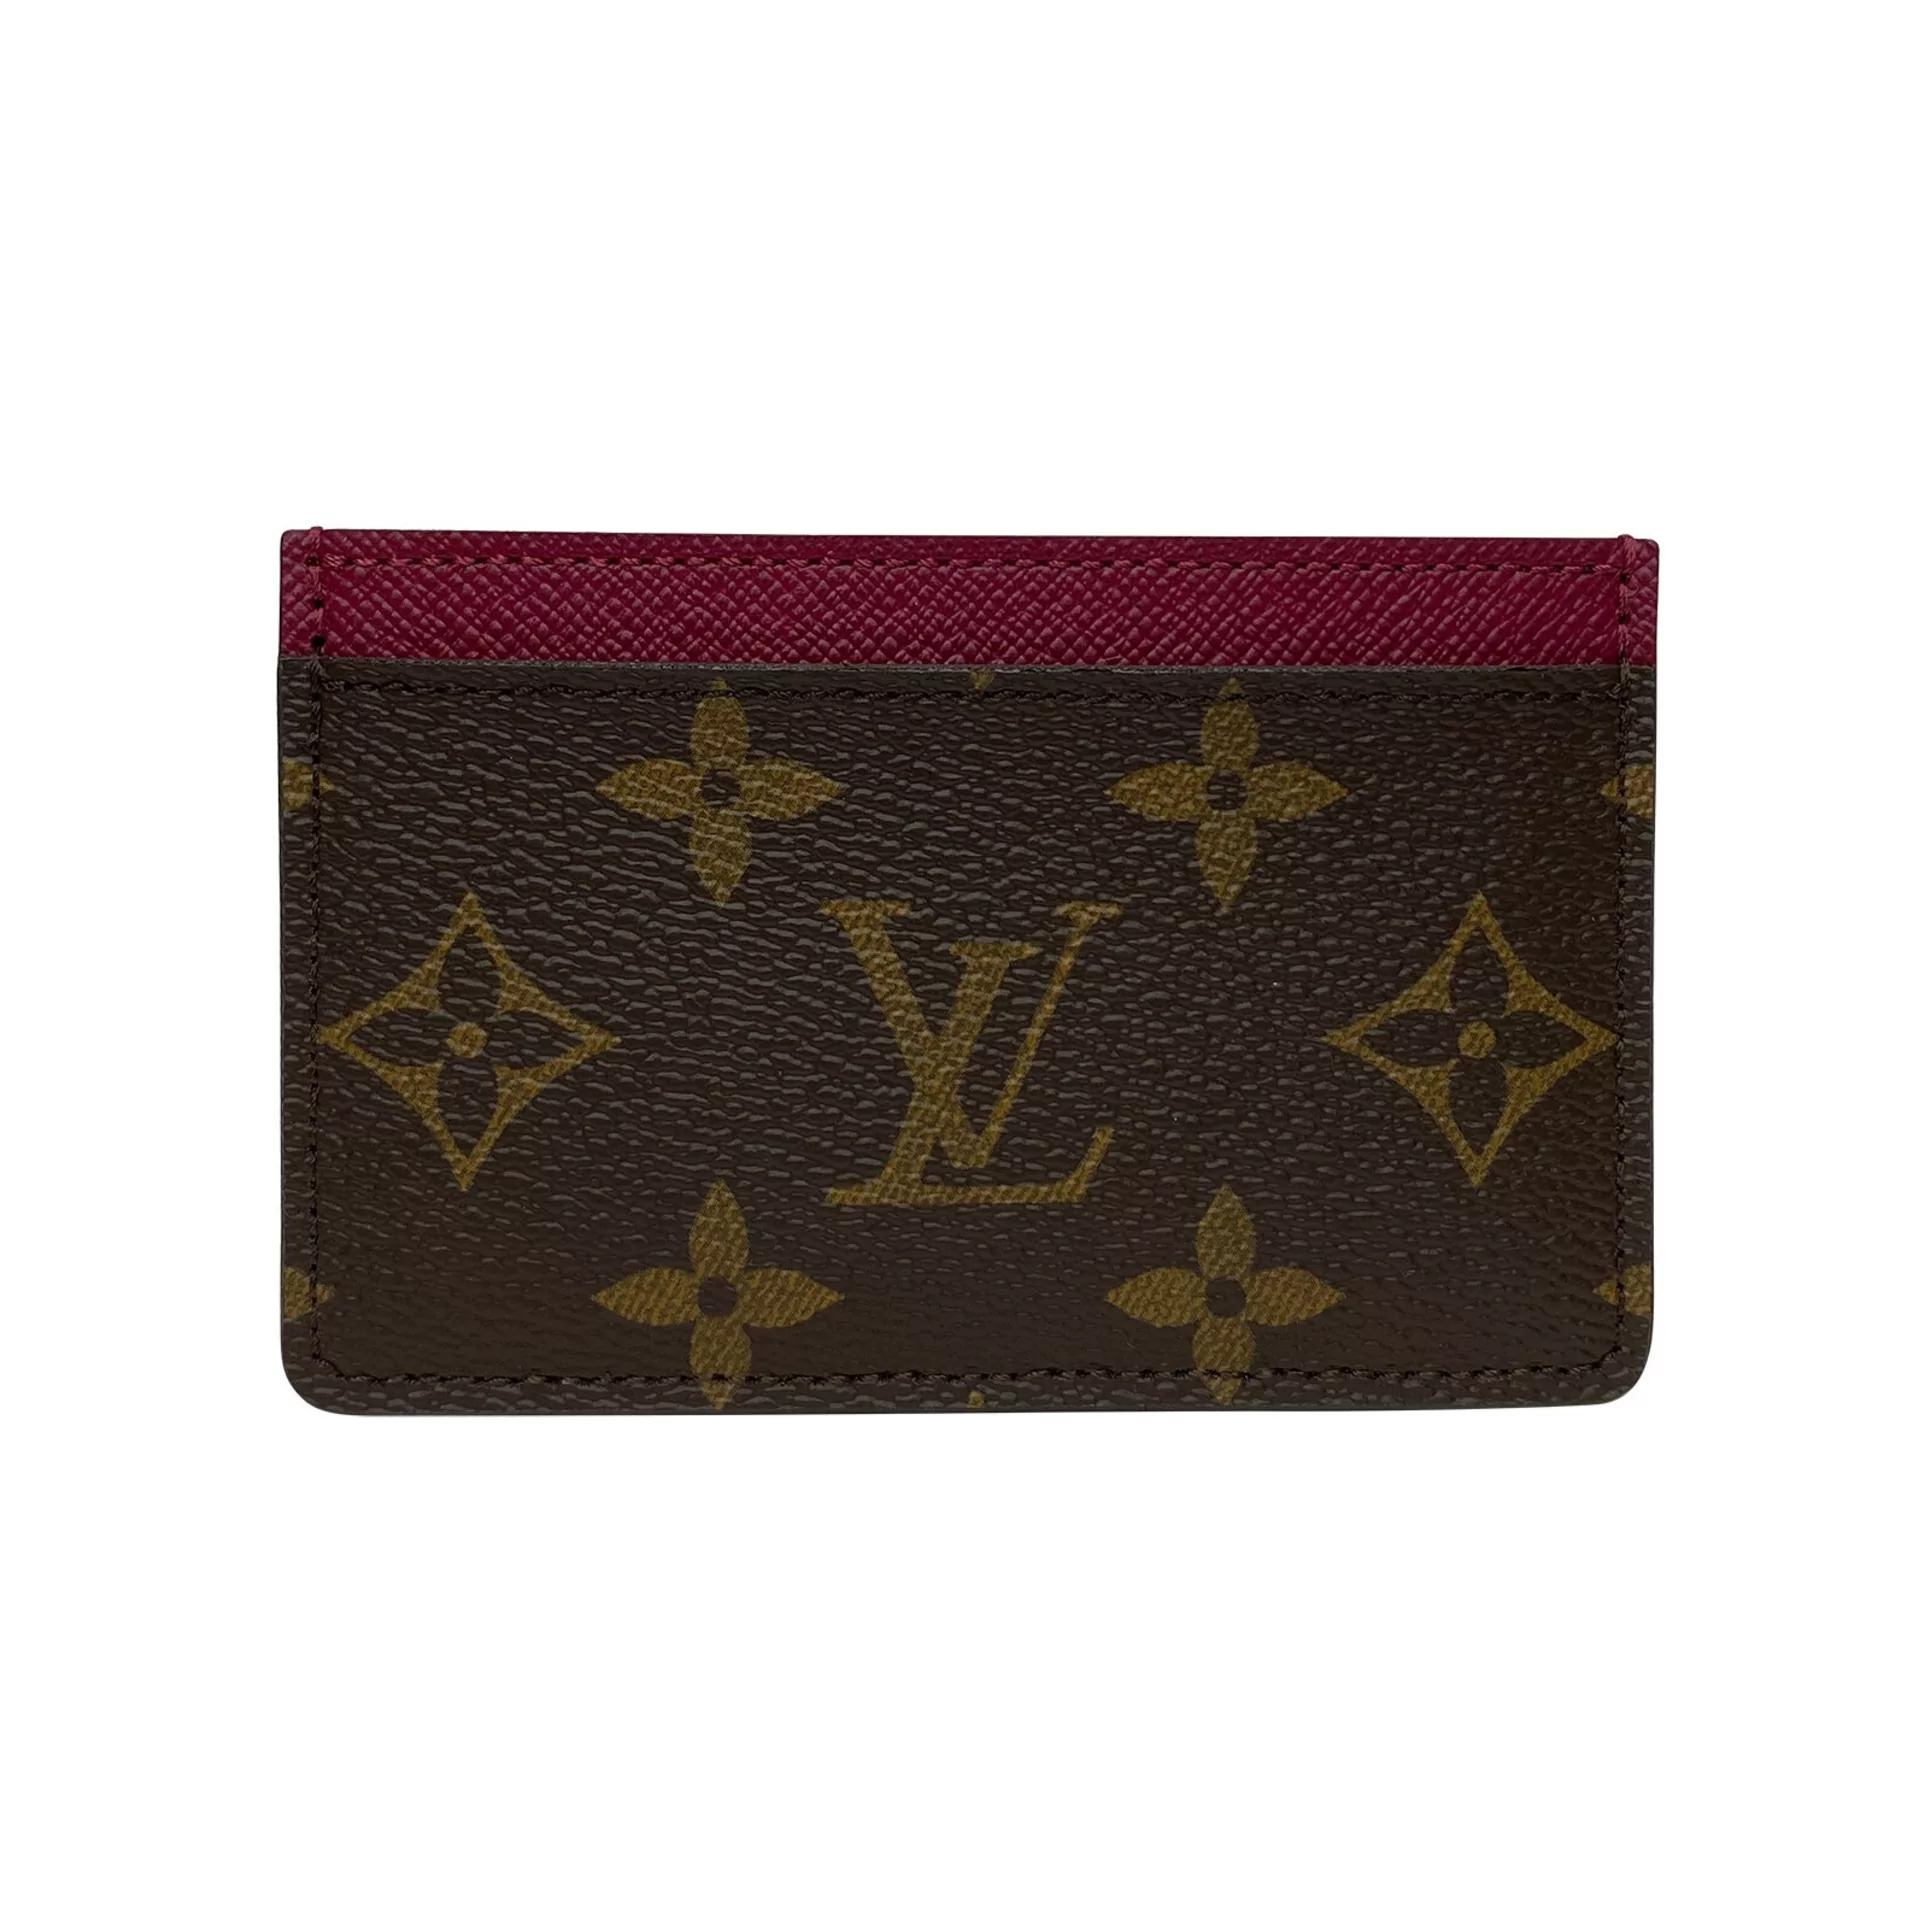 Porta-Cartão Louis Vuitton